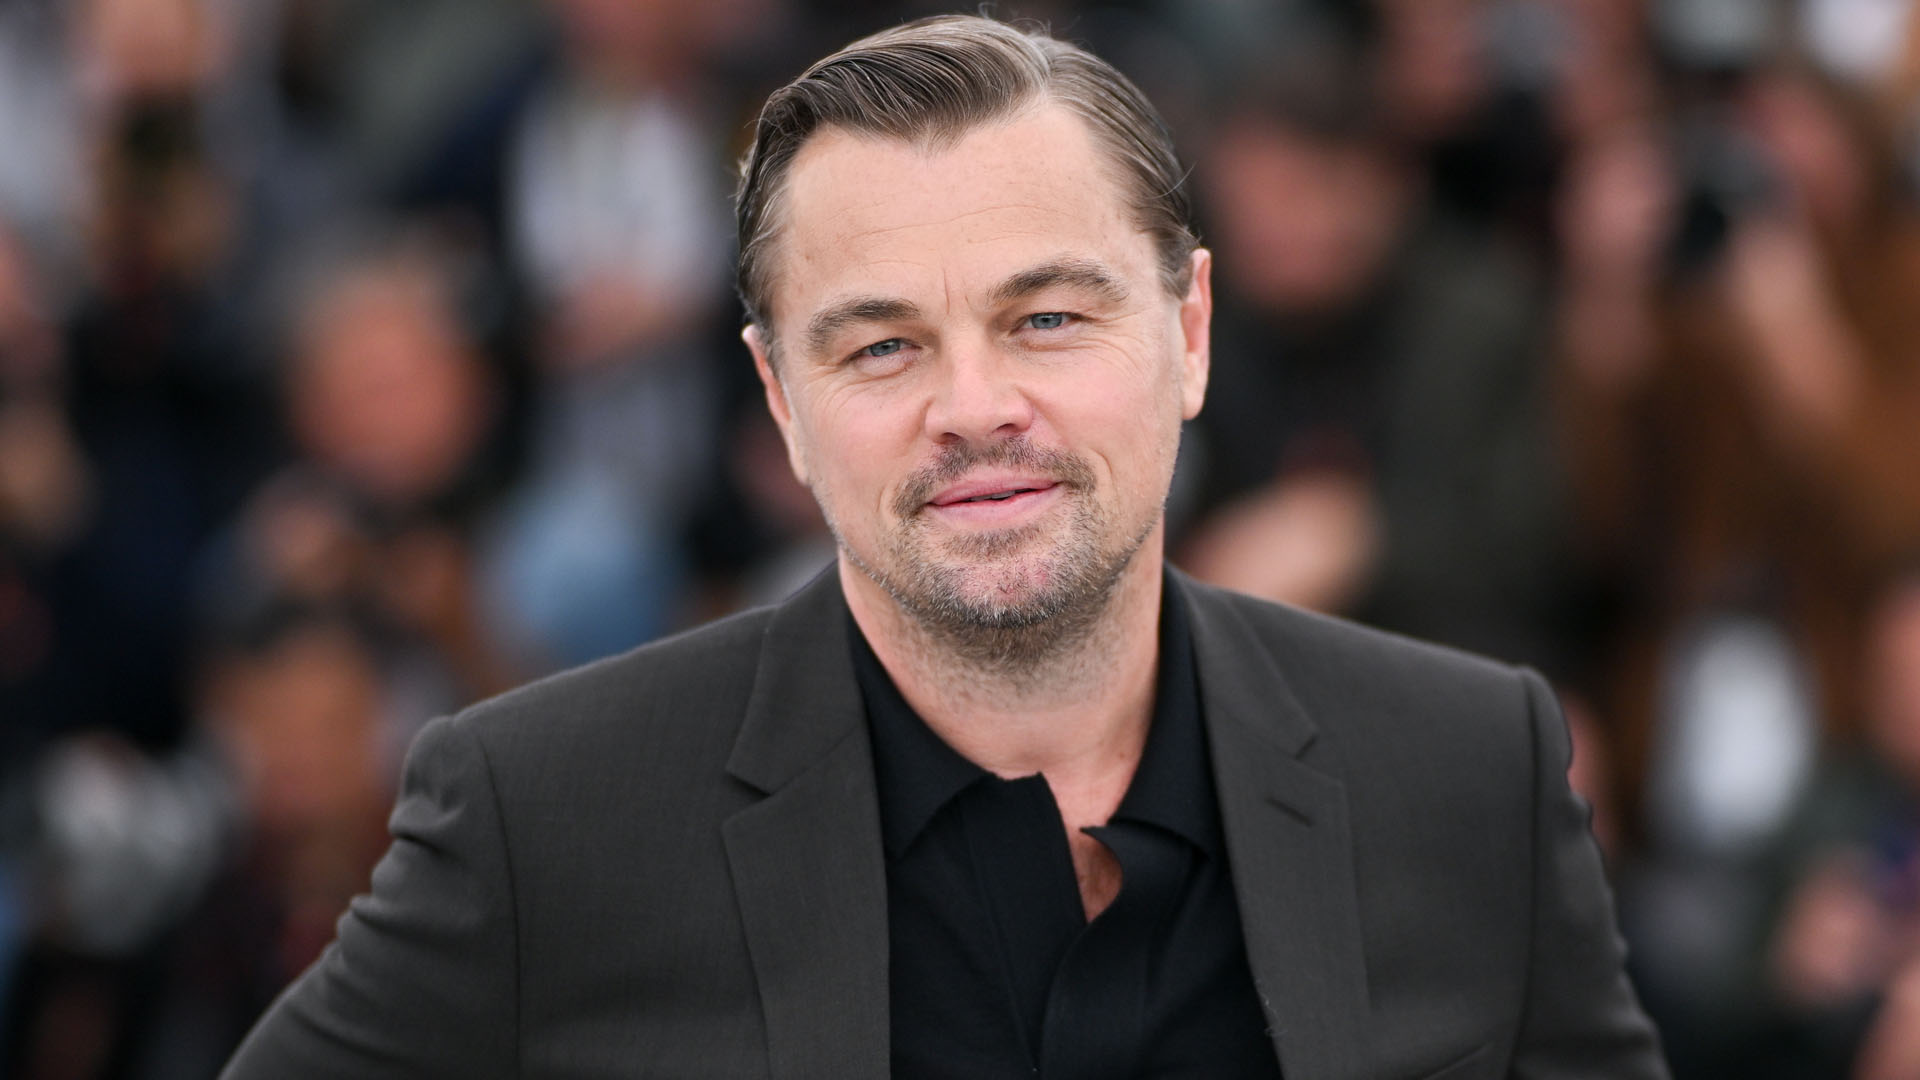 Leonardo DiCaprio, az egyetlen sztár, aki titokzatos tudott maradni egy kitárulkozó sztárvilágban | nlc